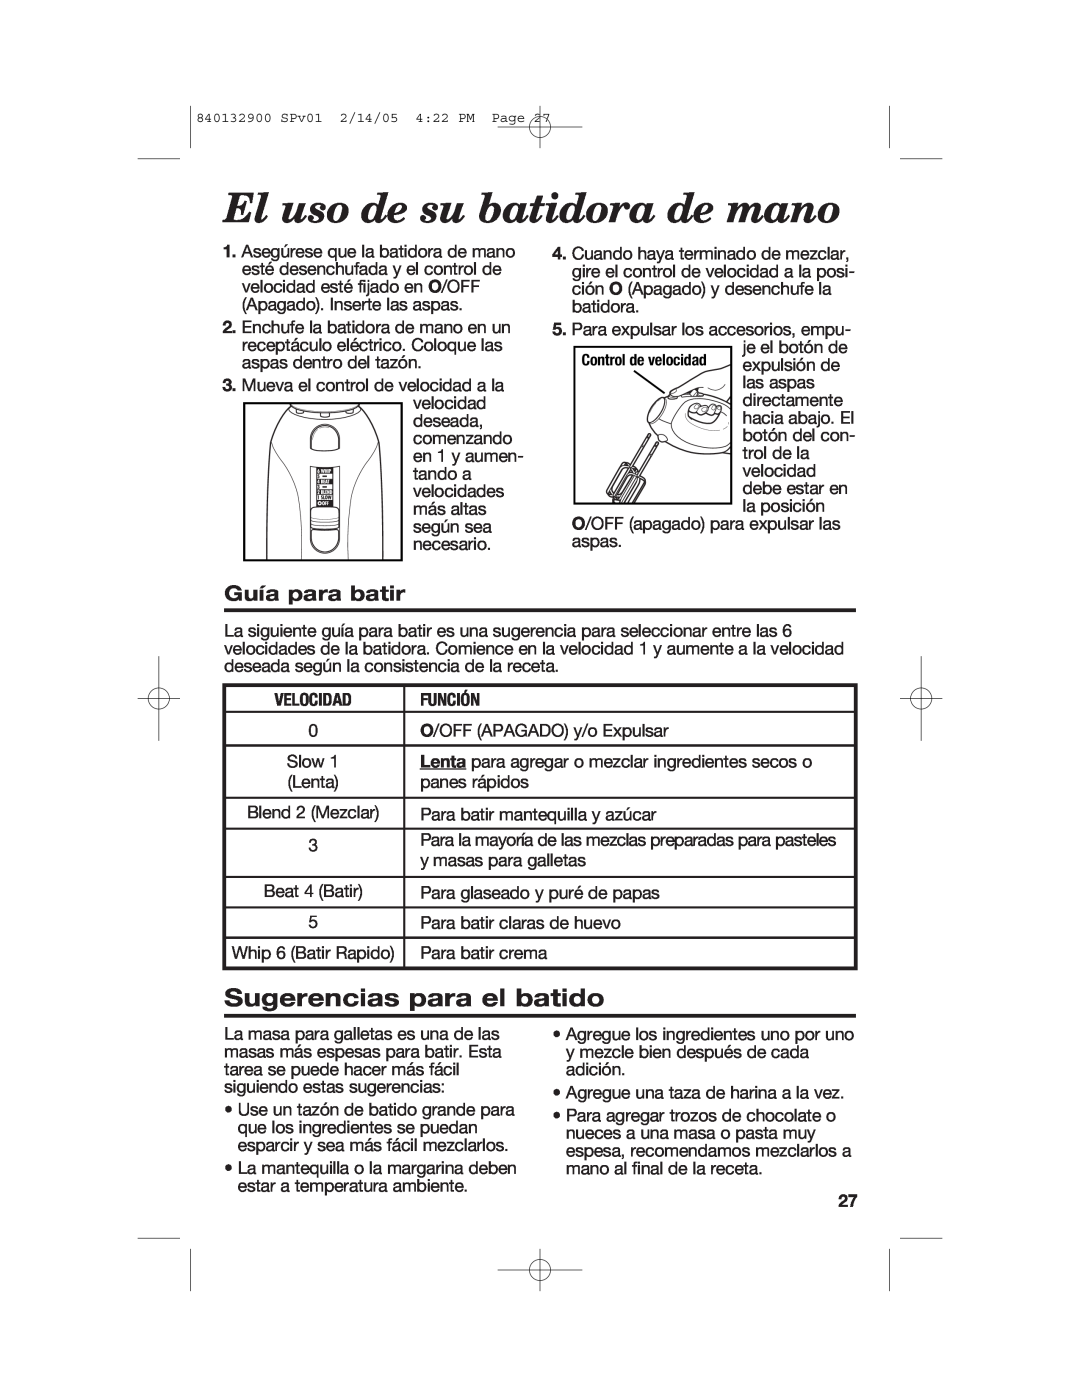 Hamilton Beach 840132900 manual Sugerencias para el batido, Guía para batir, El uso de su batidora de mano 